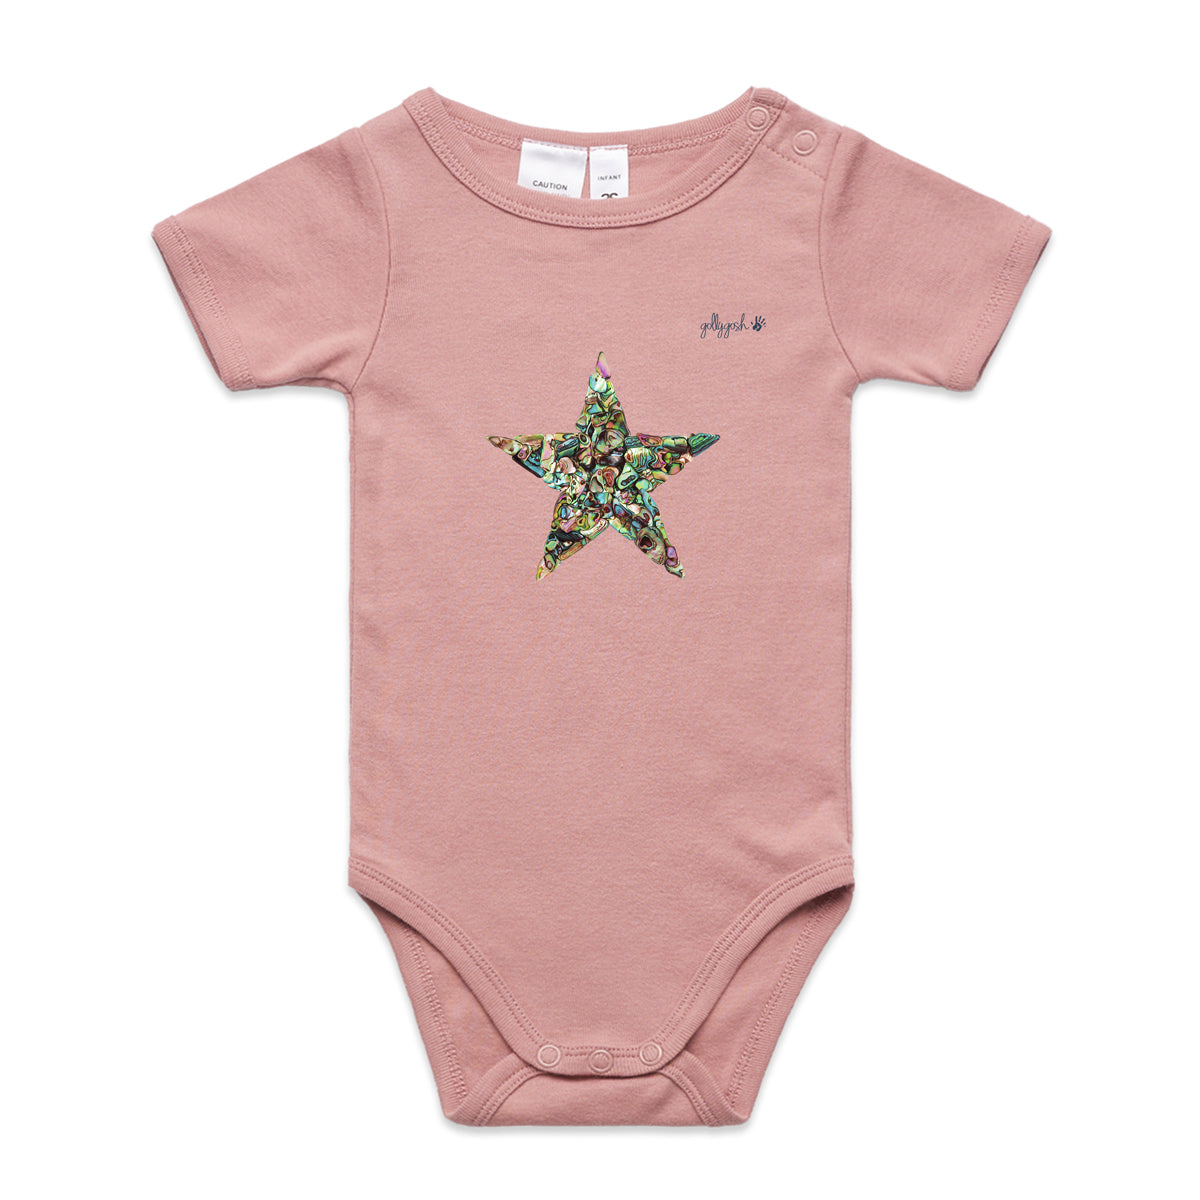 Paua Star - Infant Baby Grow